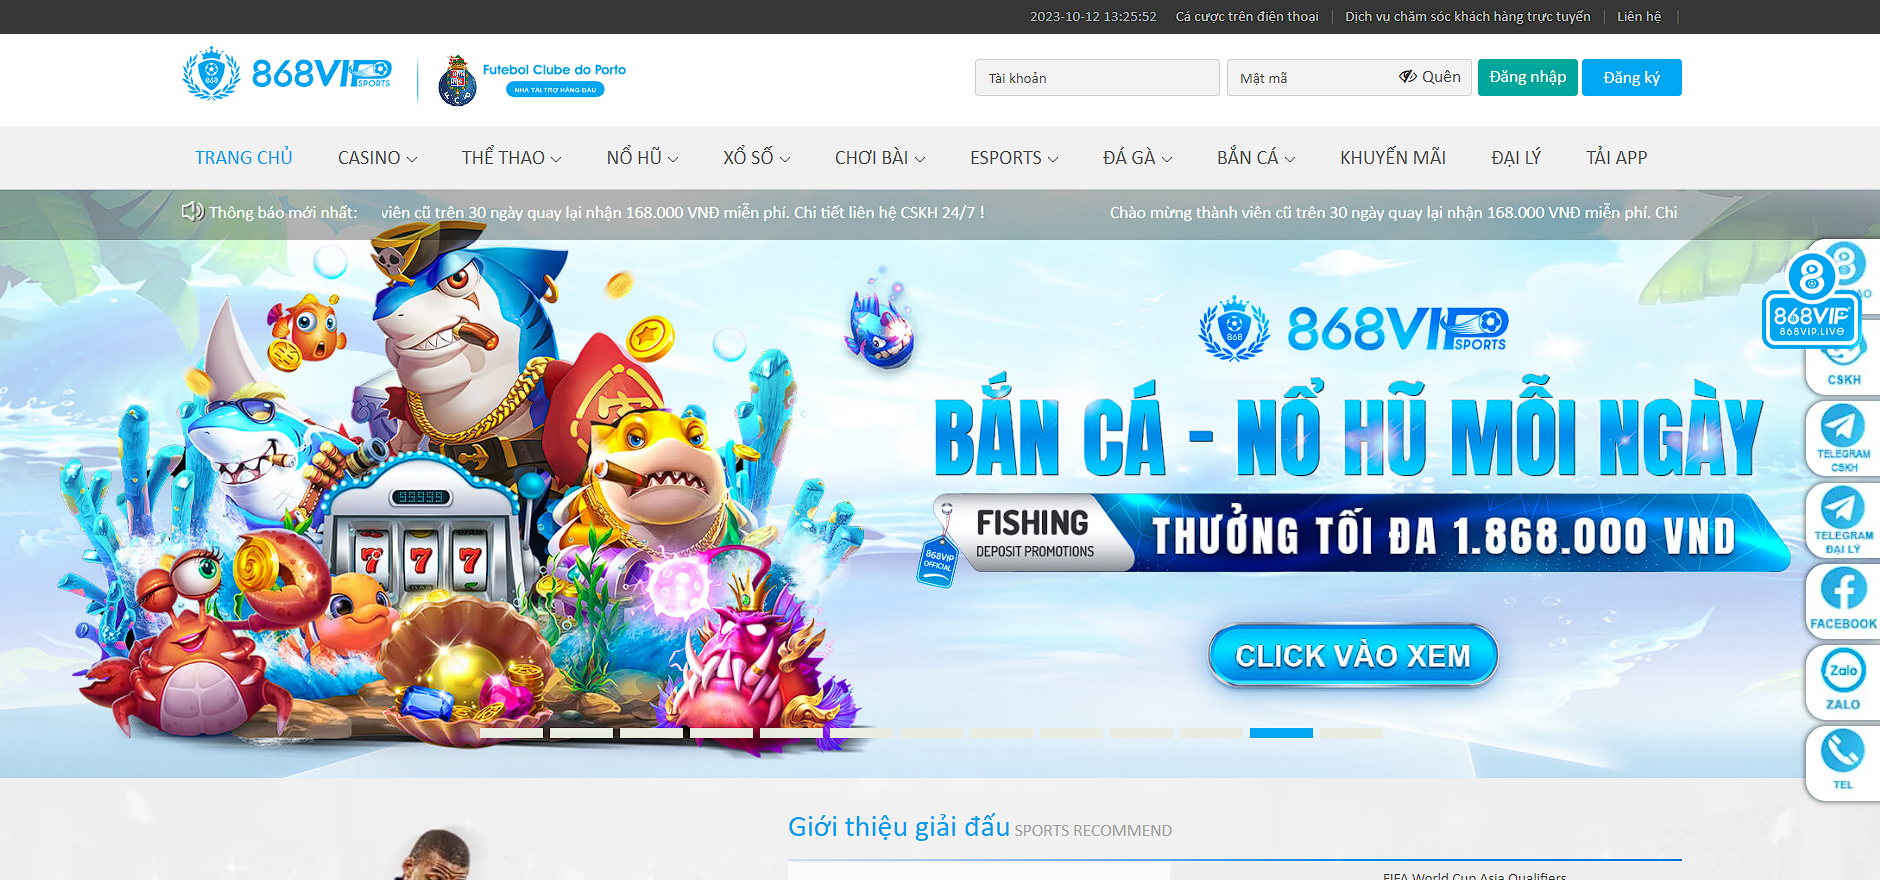 越南出名的博彩网站排名前三的线上平台 - 868VIP